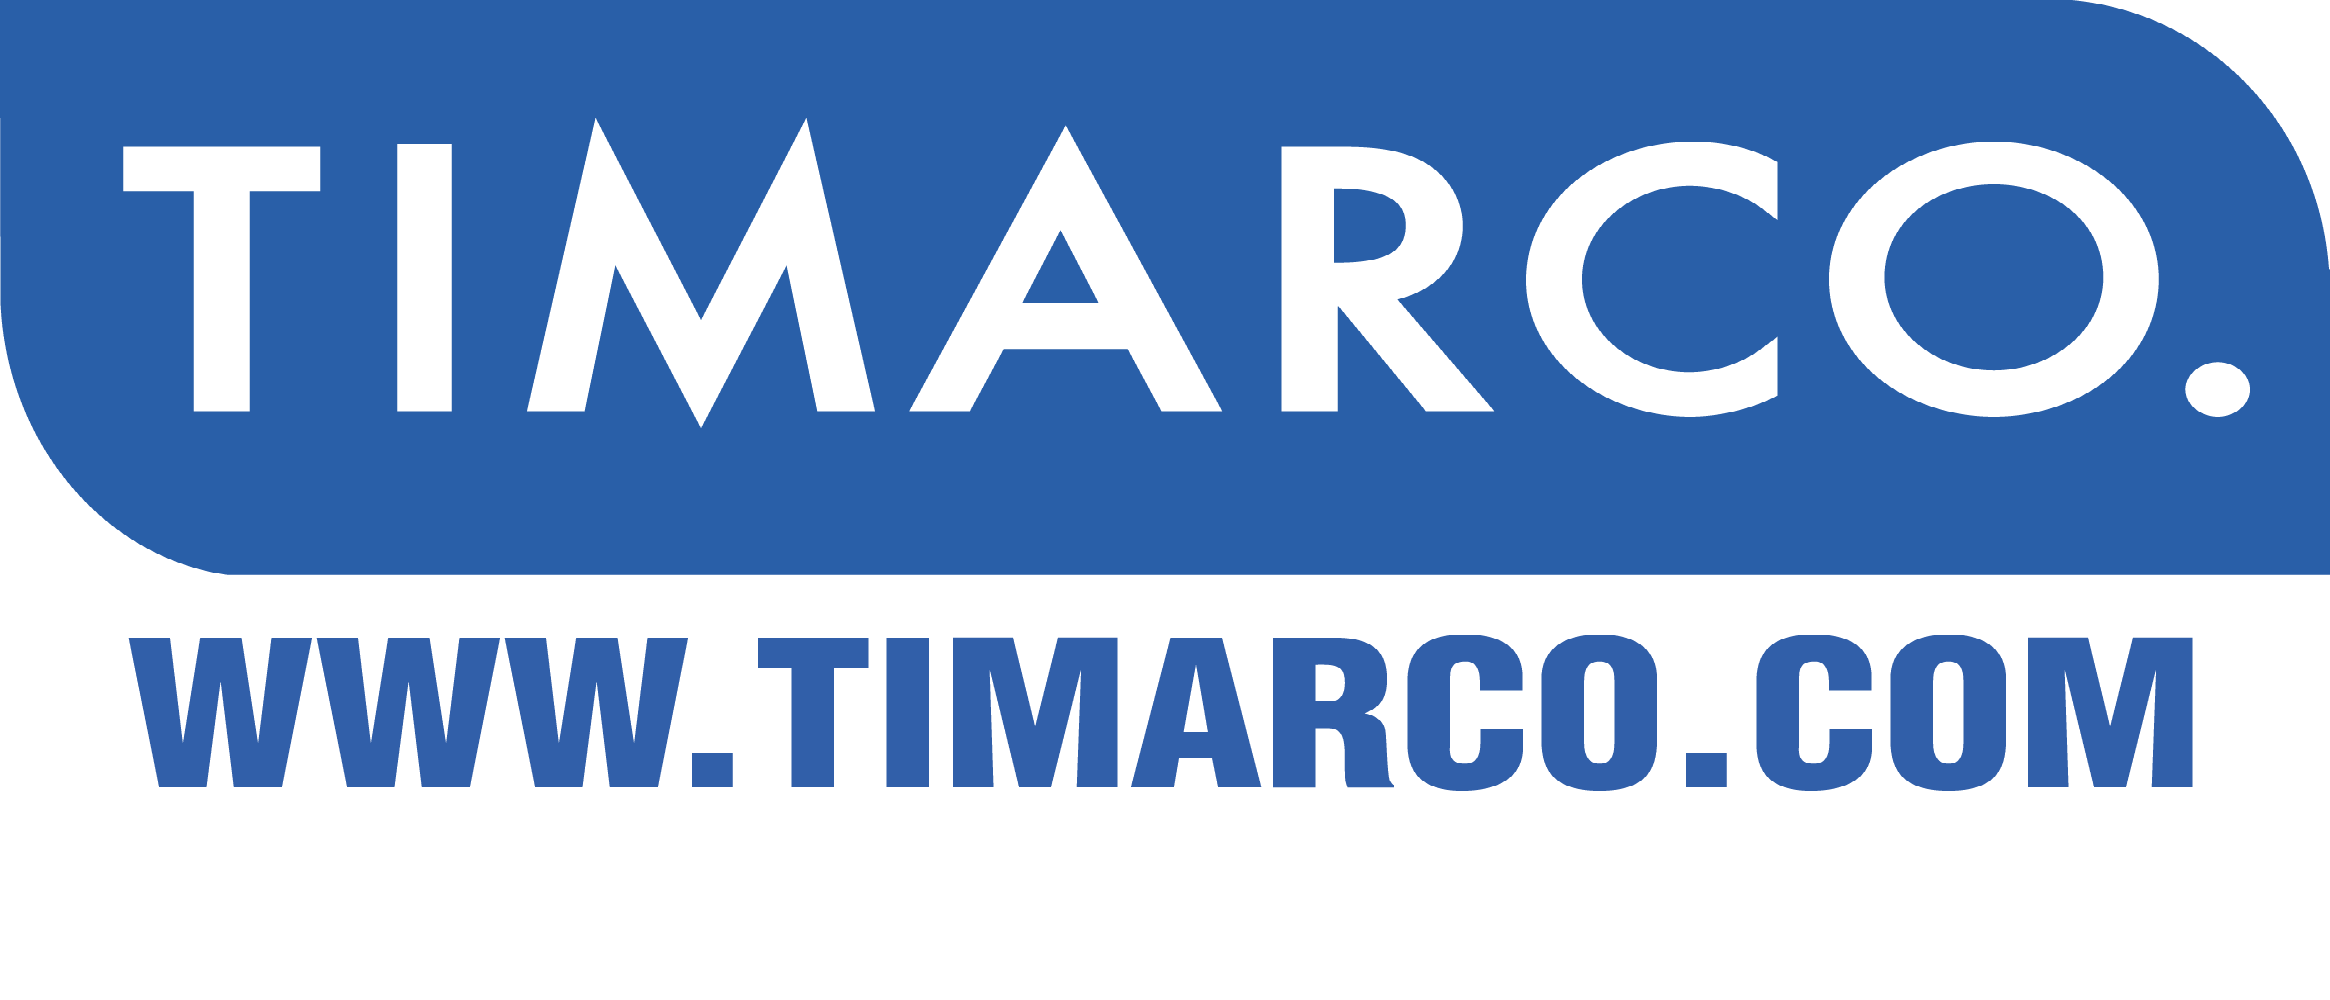 Timarco.com/de